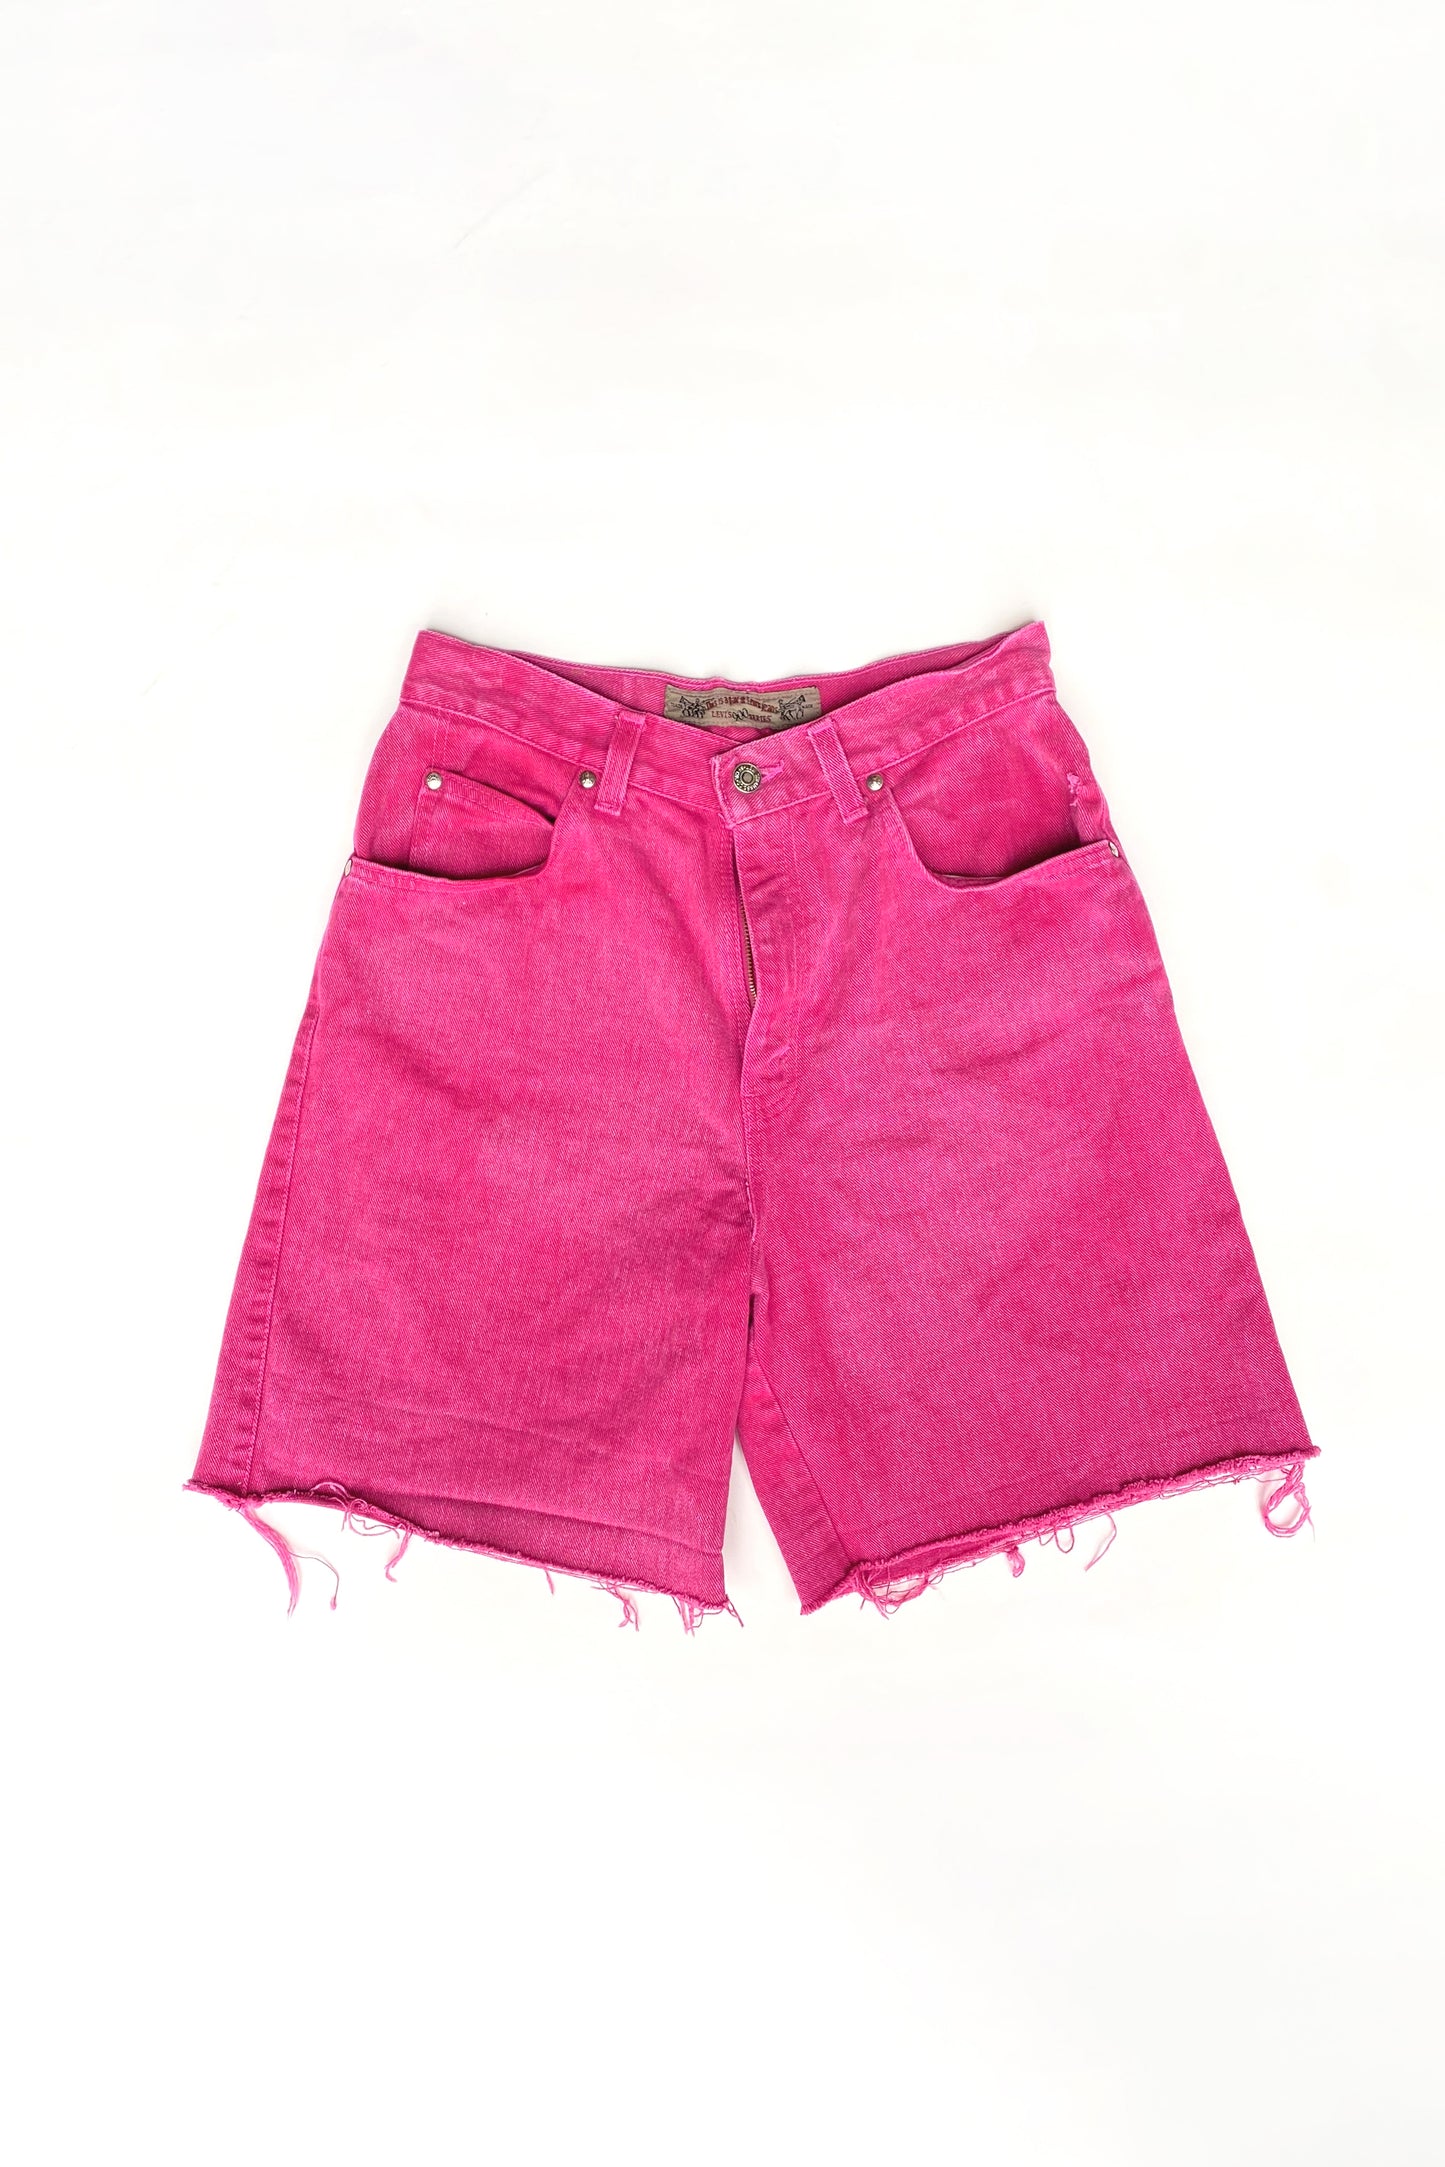 Vintage Levi's over dyed pink denim shorts